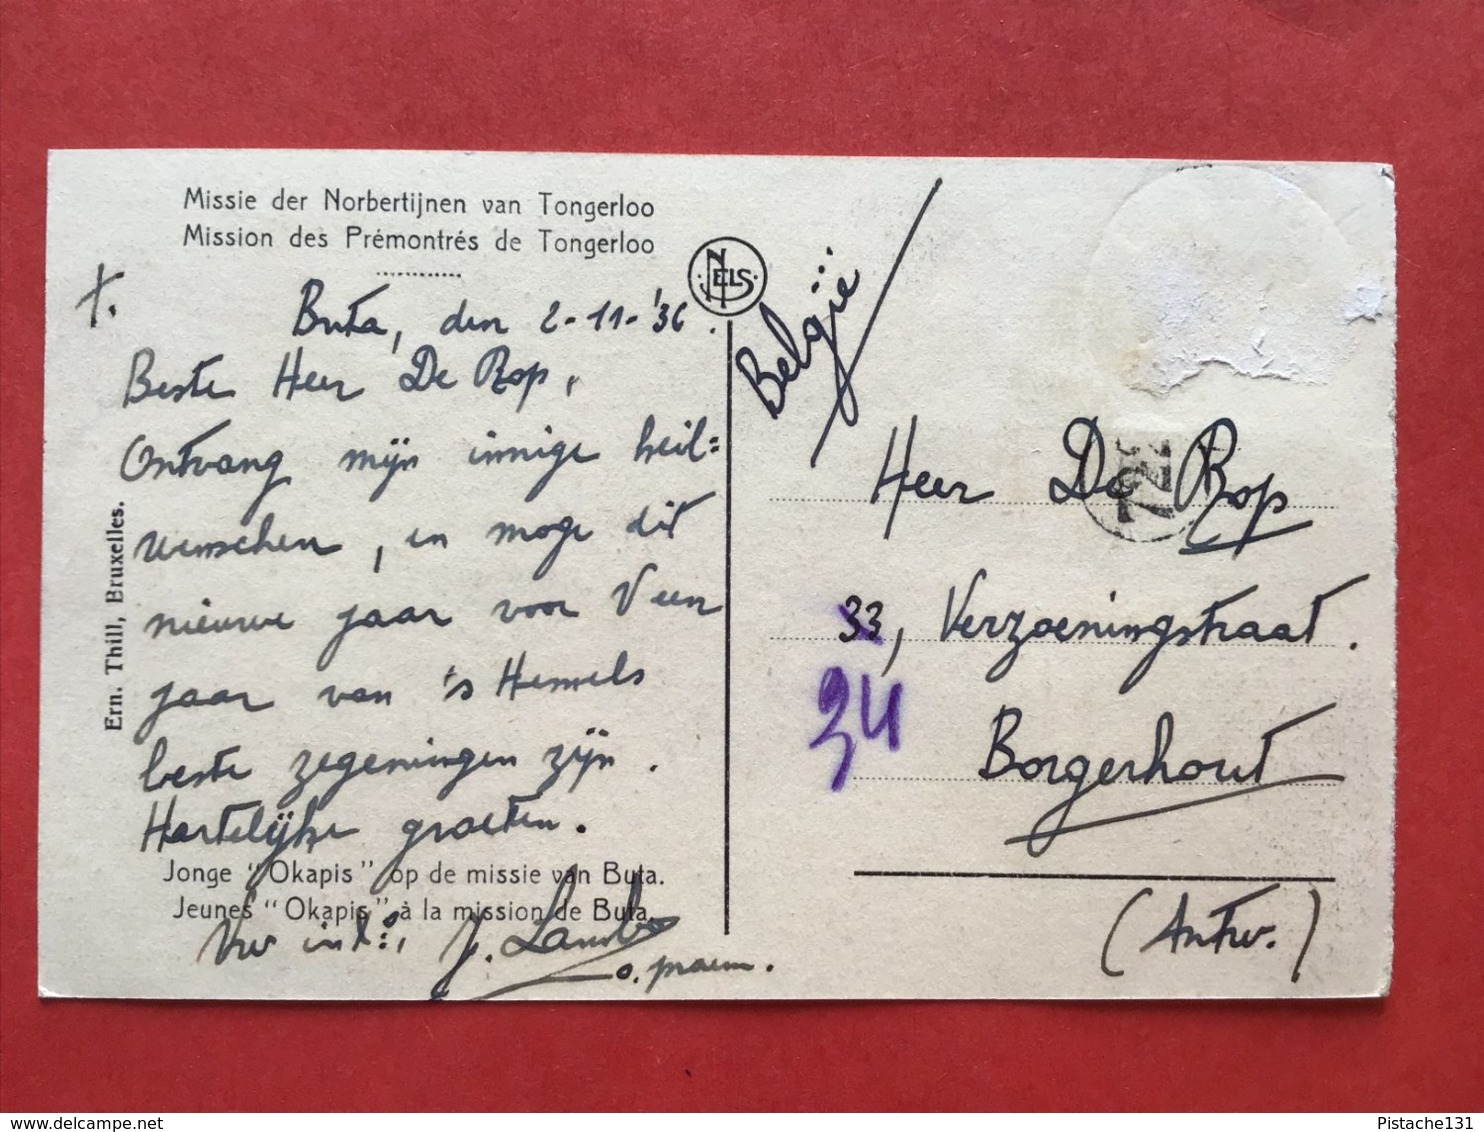 1936 MISSIE DER NORBERTIJNEN VAN TONGERLOO - JONGE OKAPIS OP DE MISSIE VAN BUTA - TONGERLO - WESTERLO - Westerlo